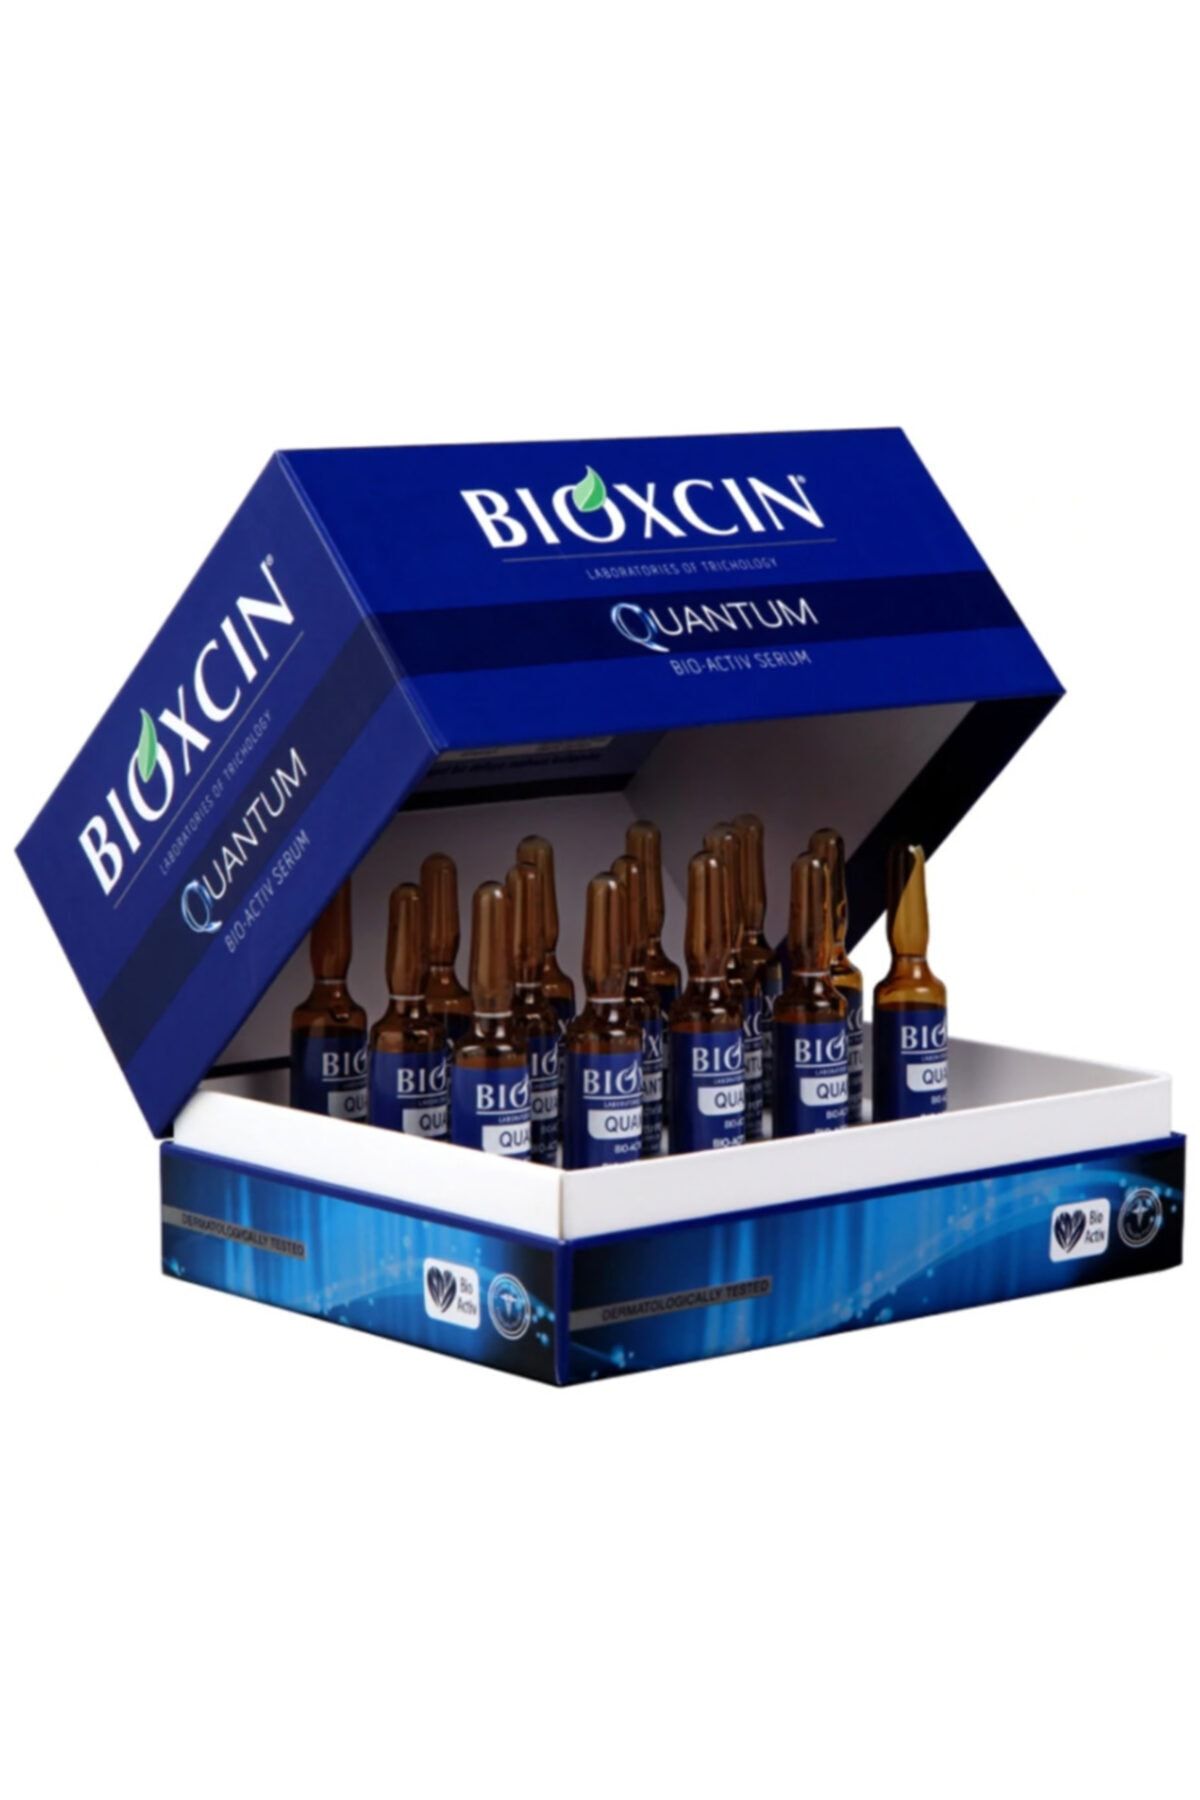 Bioxcin Quantum Bio-activ Saç Güçlendirici Serum 15 X 6 Ml